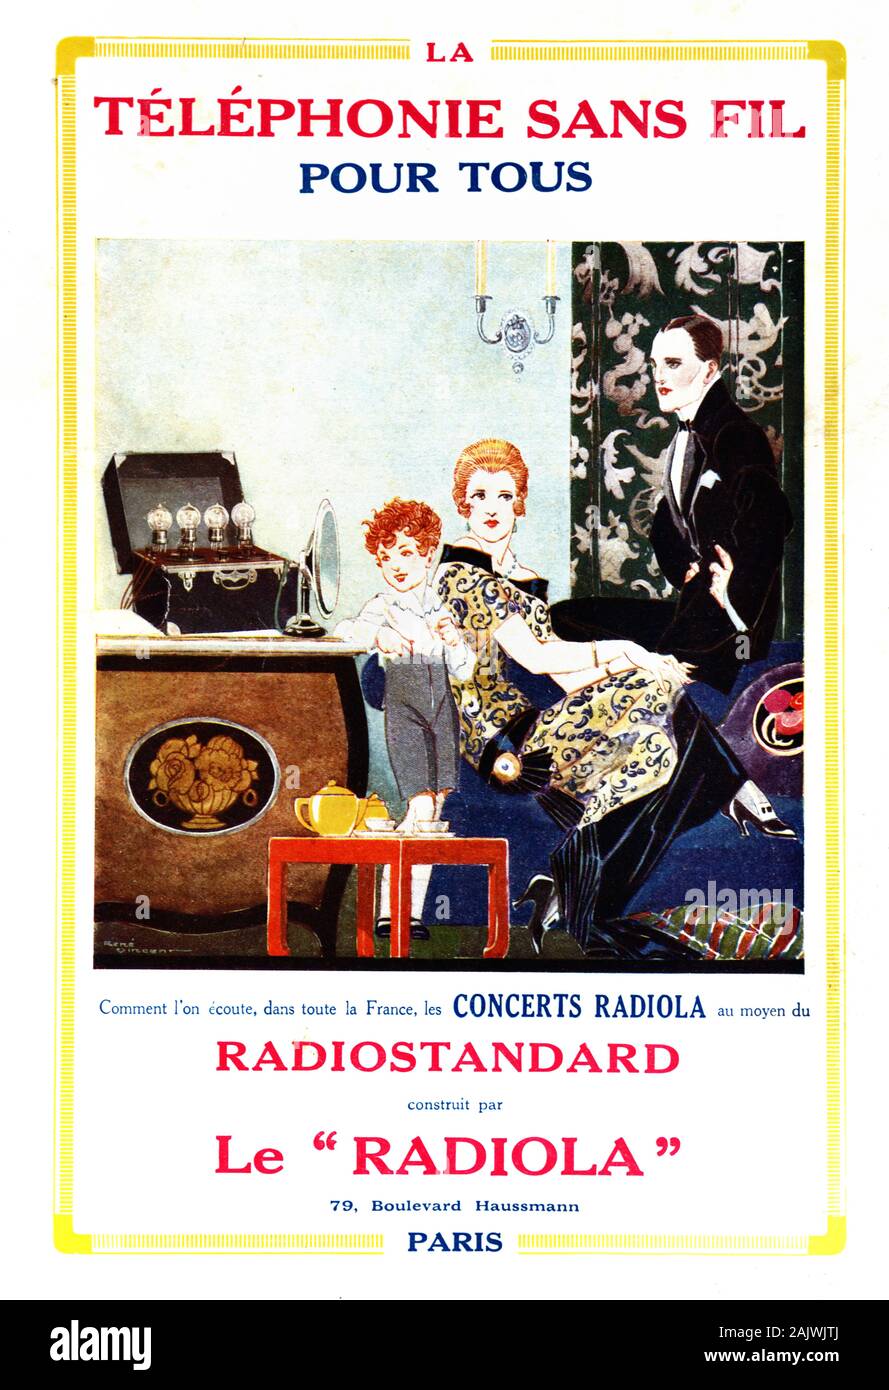 Alte Werbung, Werbung oder Werbung für einen radiola oder Radiostandard frühen Schnurloses Telefon & Europäische Familie im Jahre 1920 das Interieur mit Art déco-Möbeln 1923 Stockfoto